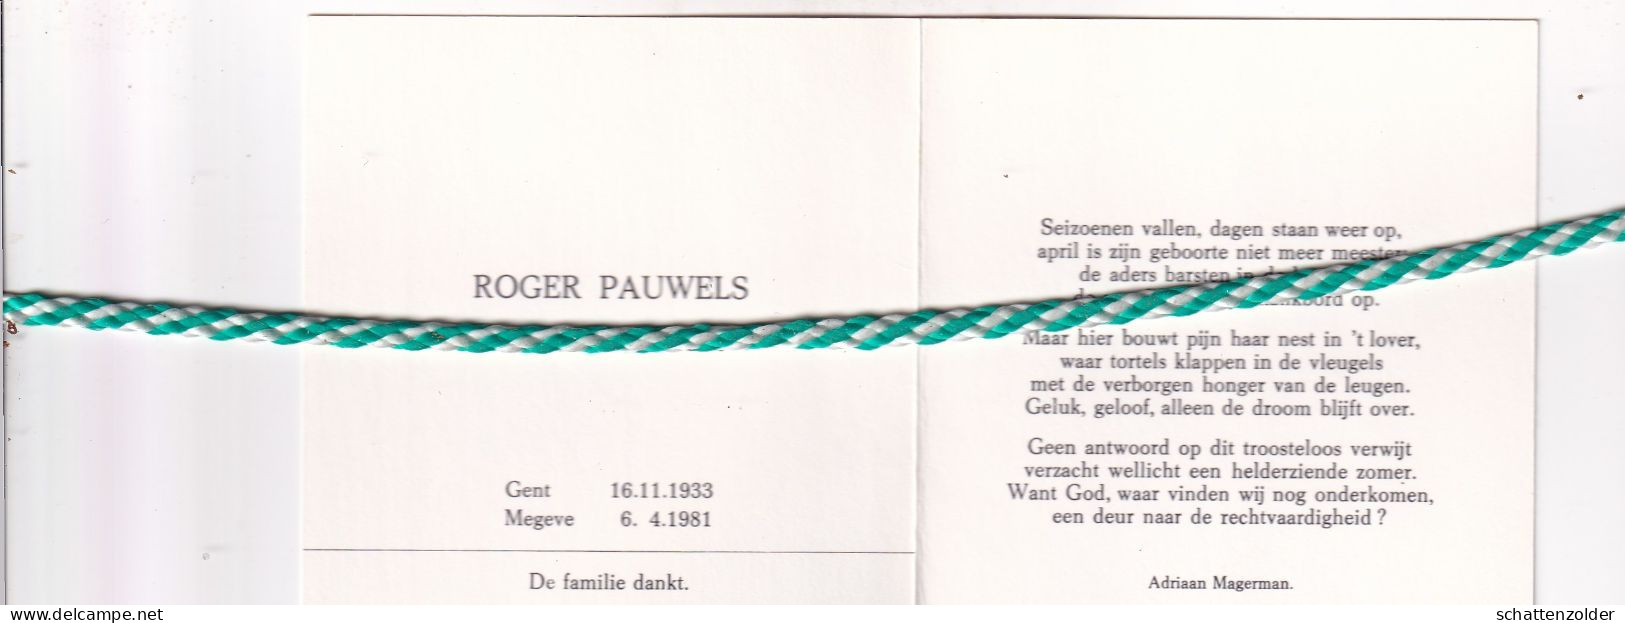 Roger Pauwels (Artiestennaam Paul Rutger), Gent 1933, Megeve 1981. Organist - Overlijden